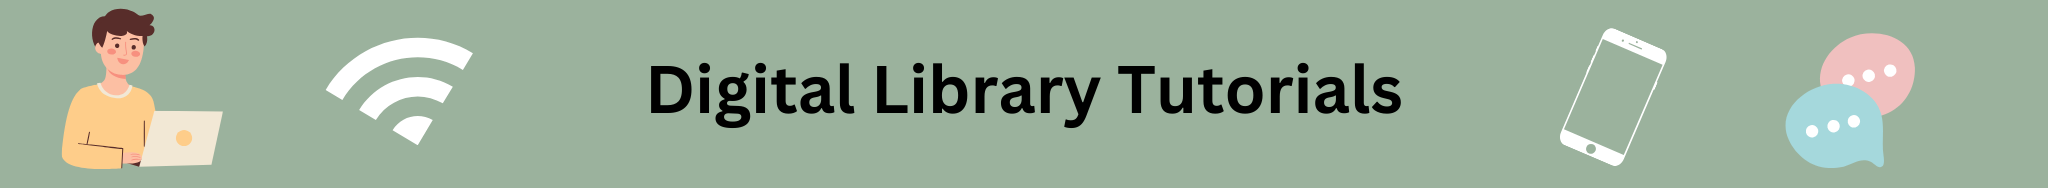 Digital Library Tutorials